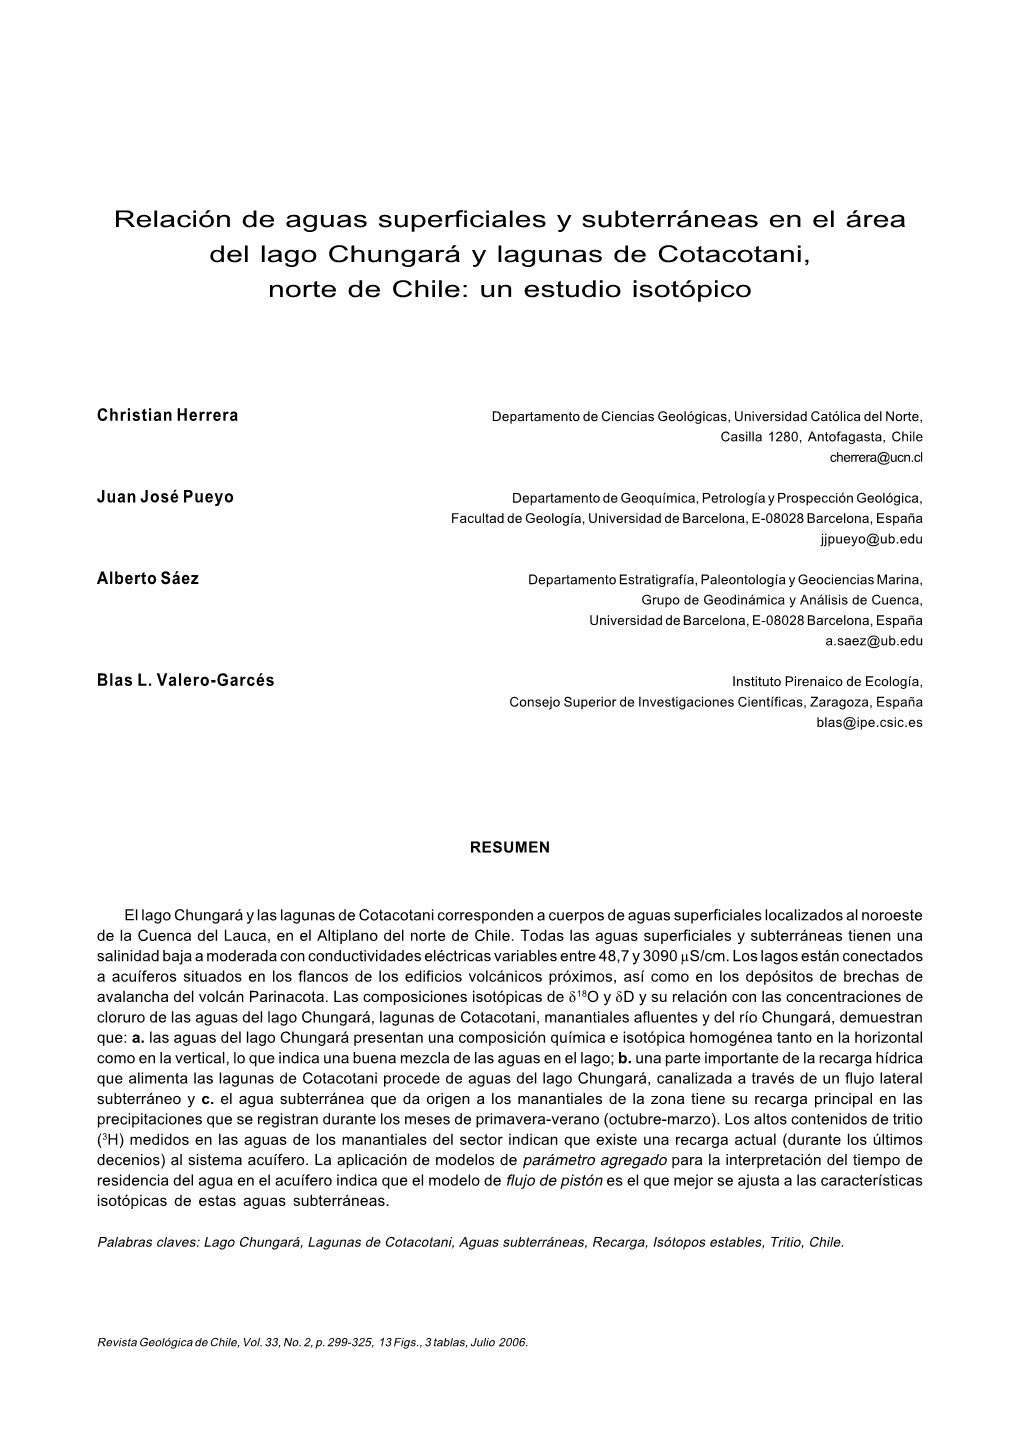 Relación De Aguas Superficiales Y Subterráneas En El Área Del Lago Chungará Y Lagunas De Cotacotani, Norte De Chile: Un Estudio Isotópico